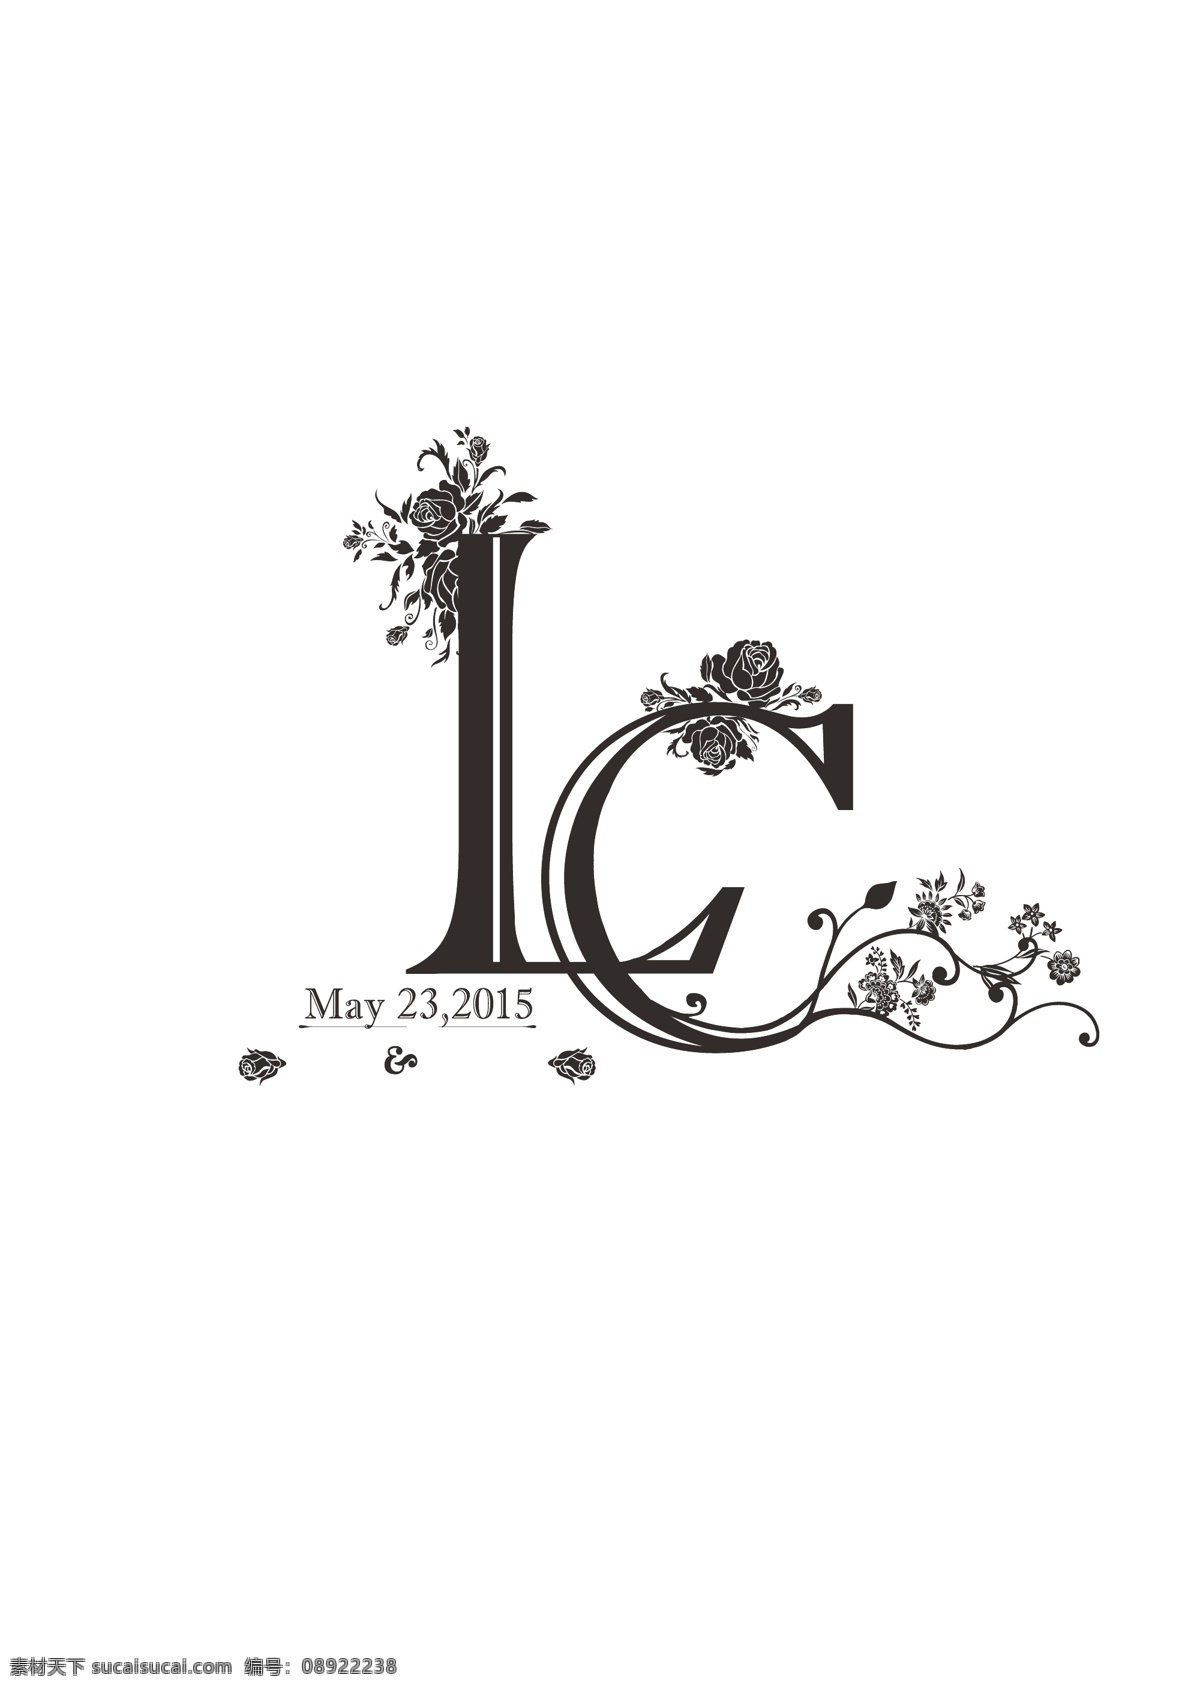 lc 婚礼 logo 矢量图 名字缩写 婚礼logo 纪念logo 标志图标 其他图标